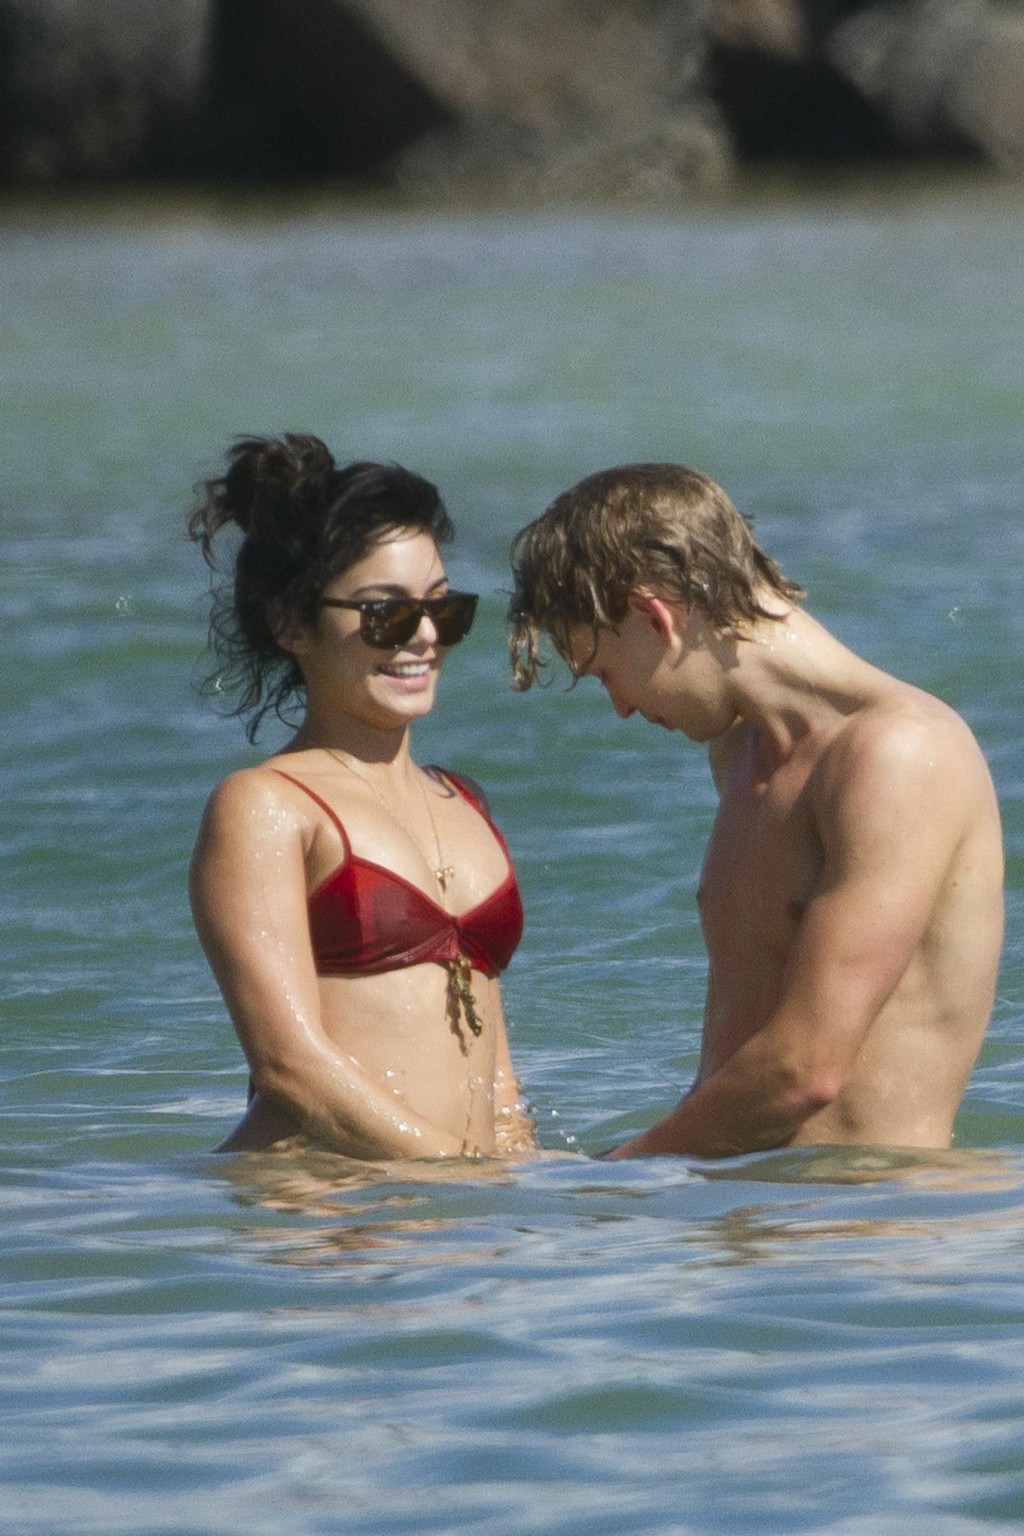 Vanessa hudgens en bikini rojo sexy besandose con su novio en una playa de hawaii
 #75275778